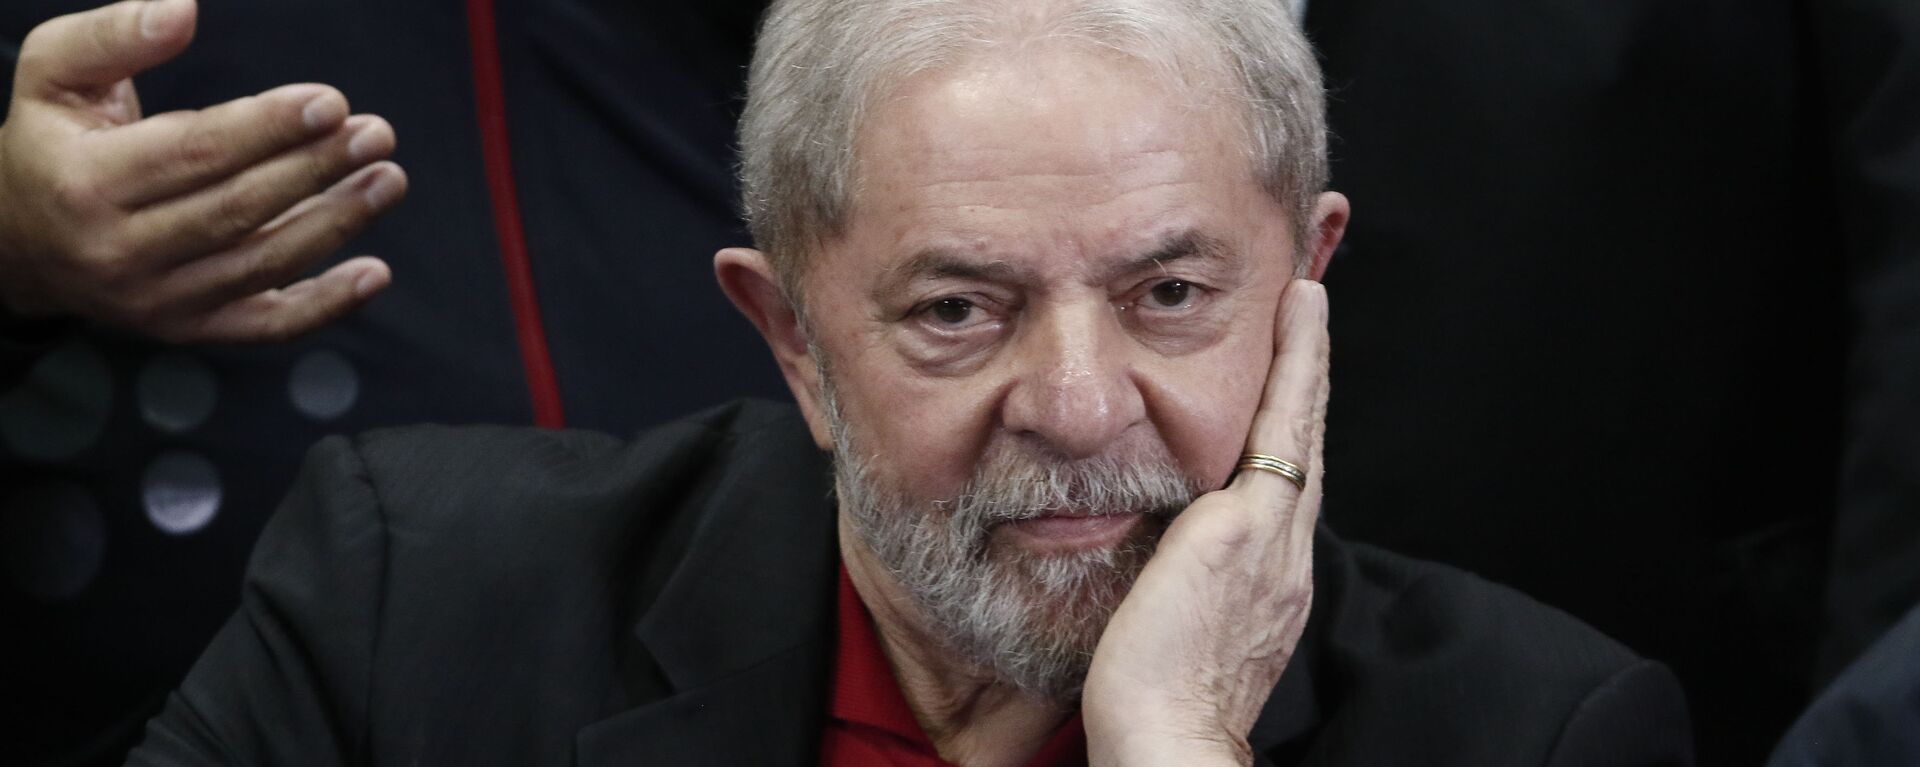 Luiz Inácio Lula da Silva, expresidente brasileño - Sputnik Mundo, 1920, 11.08.2021